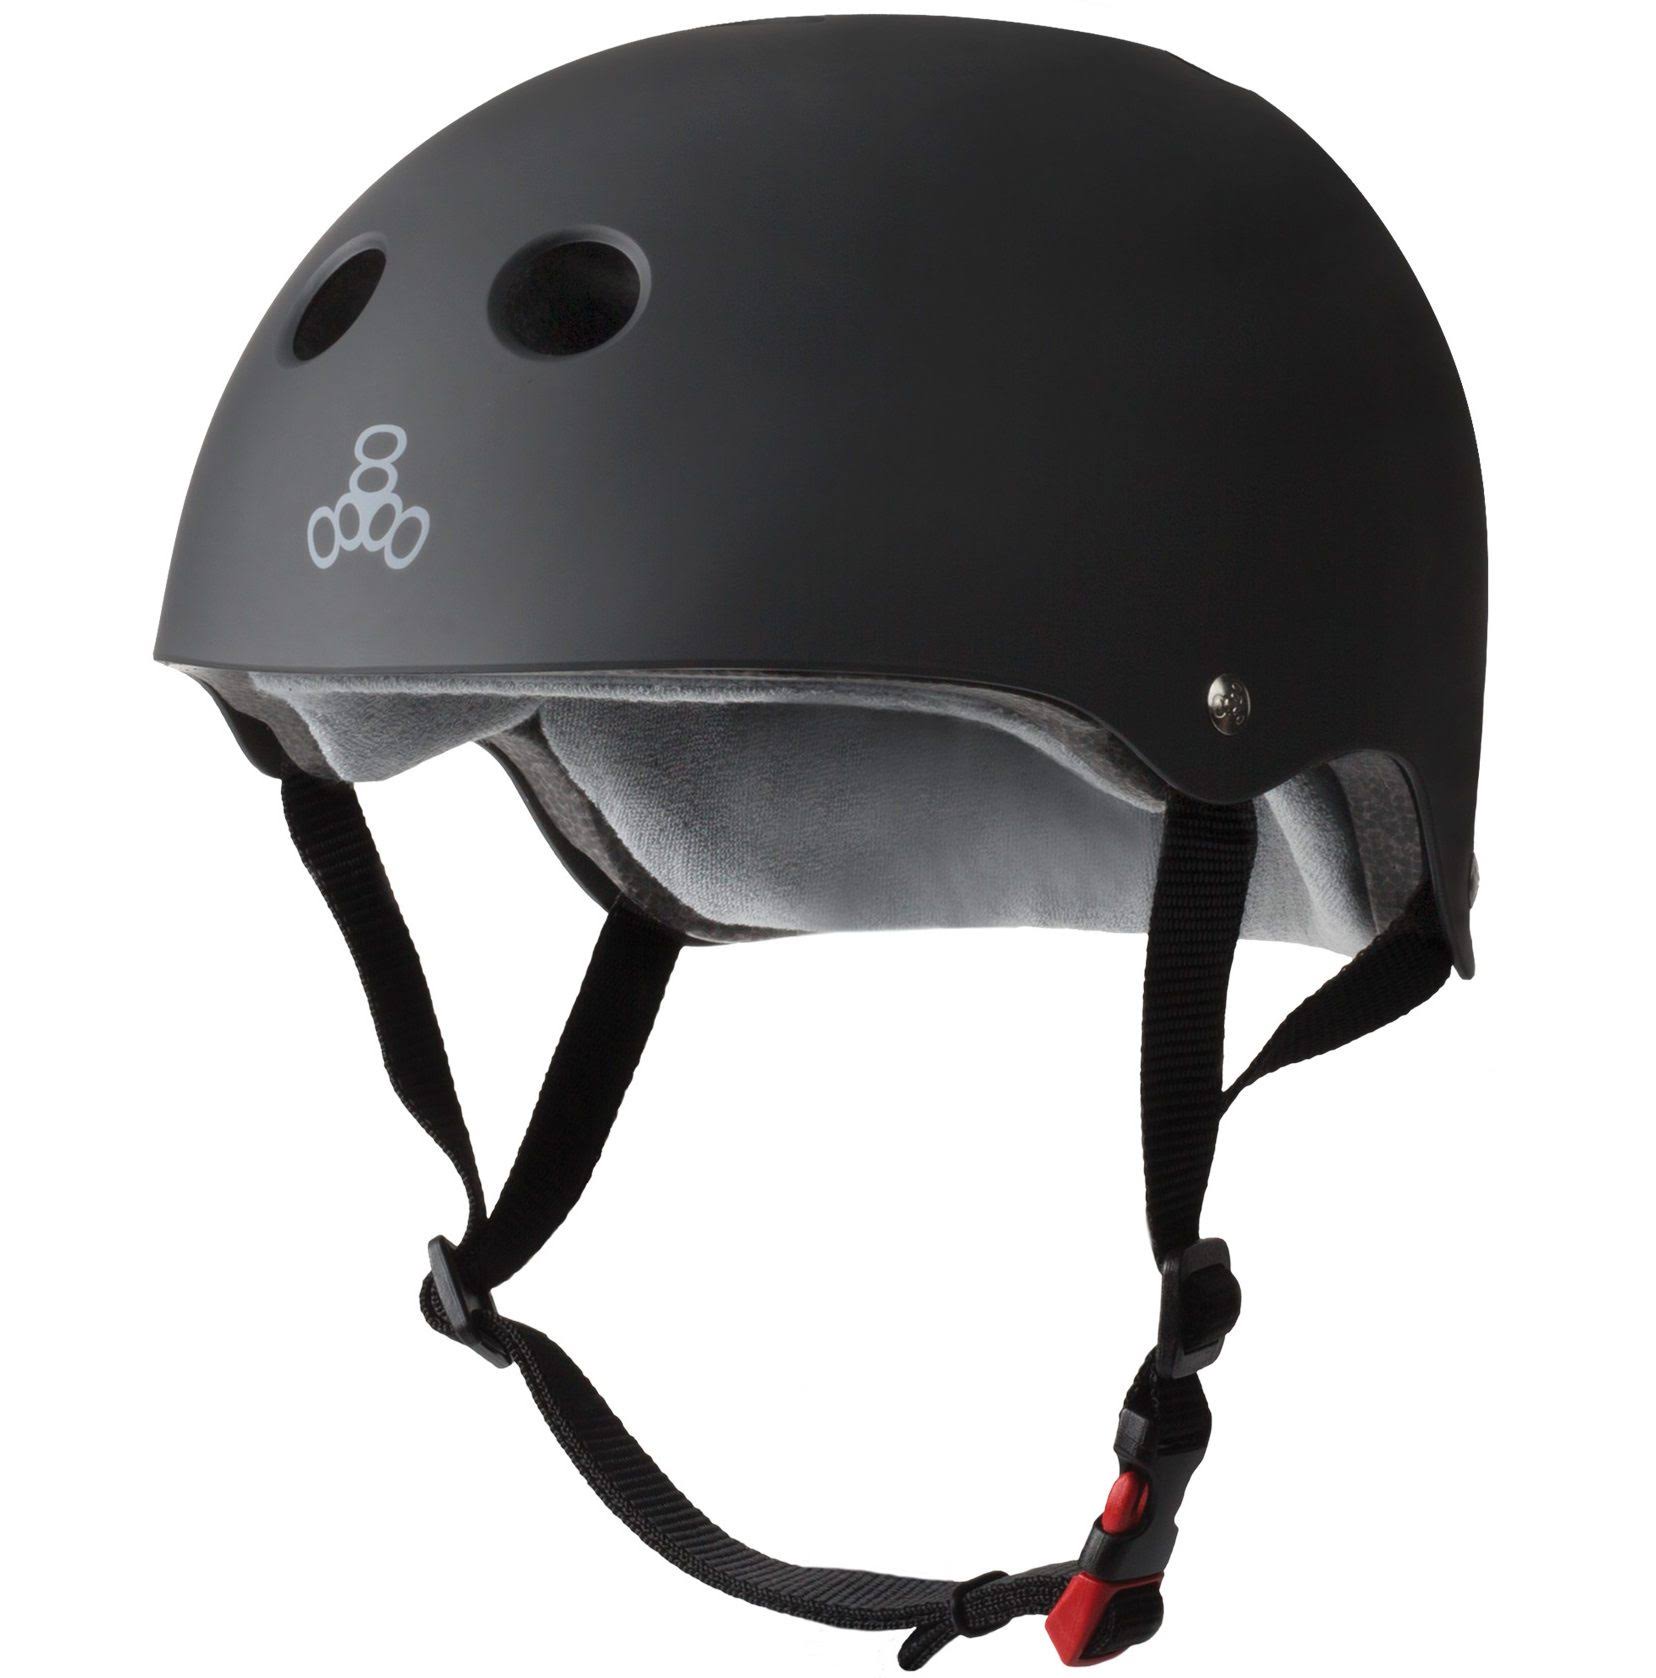 Triple 8 The Certified Sweatsaver Helmet - Black Rubber